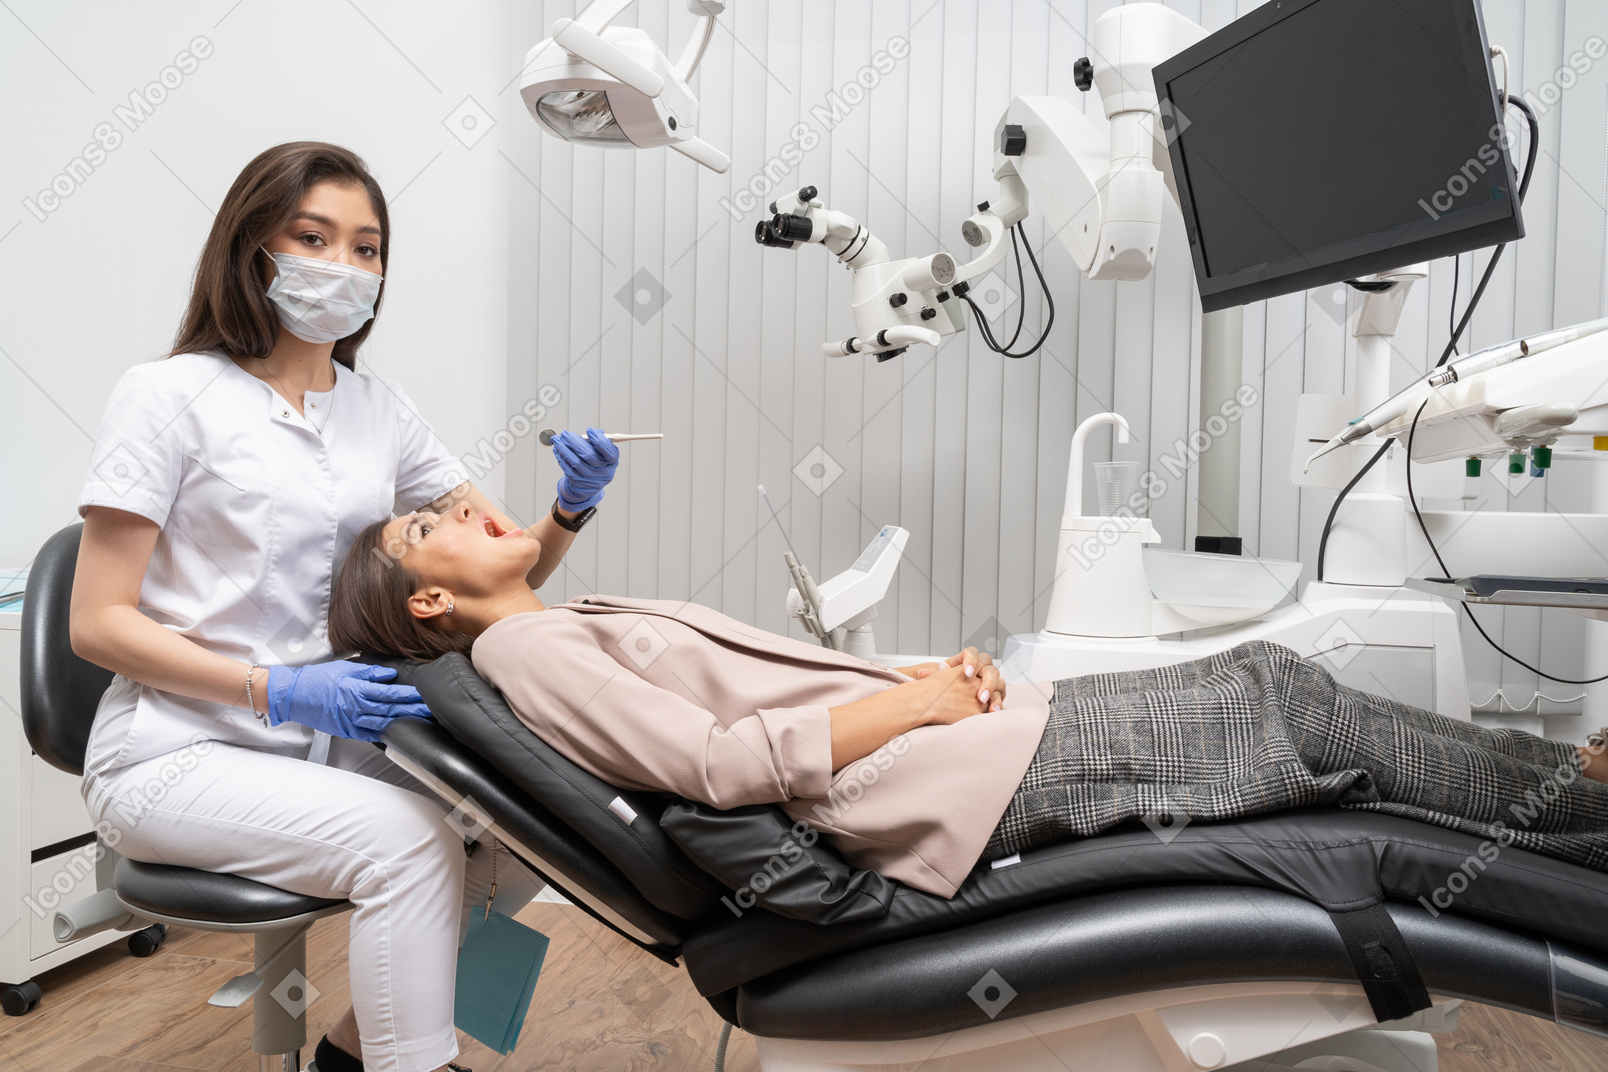 Toute la longueur d'une femme dentiste examinant sa patiente couchée dans une armoire d'hôpital